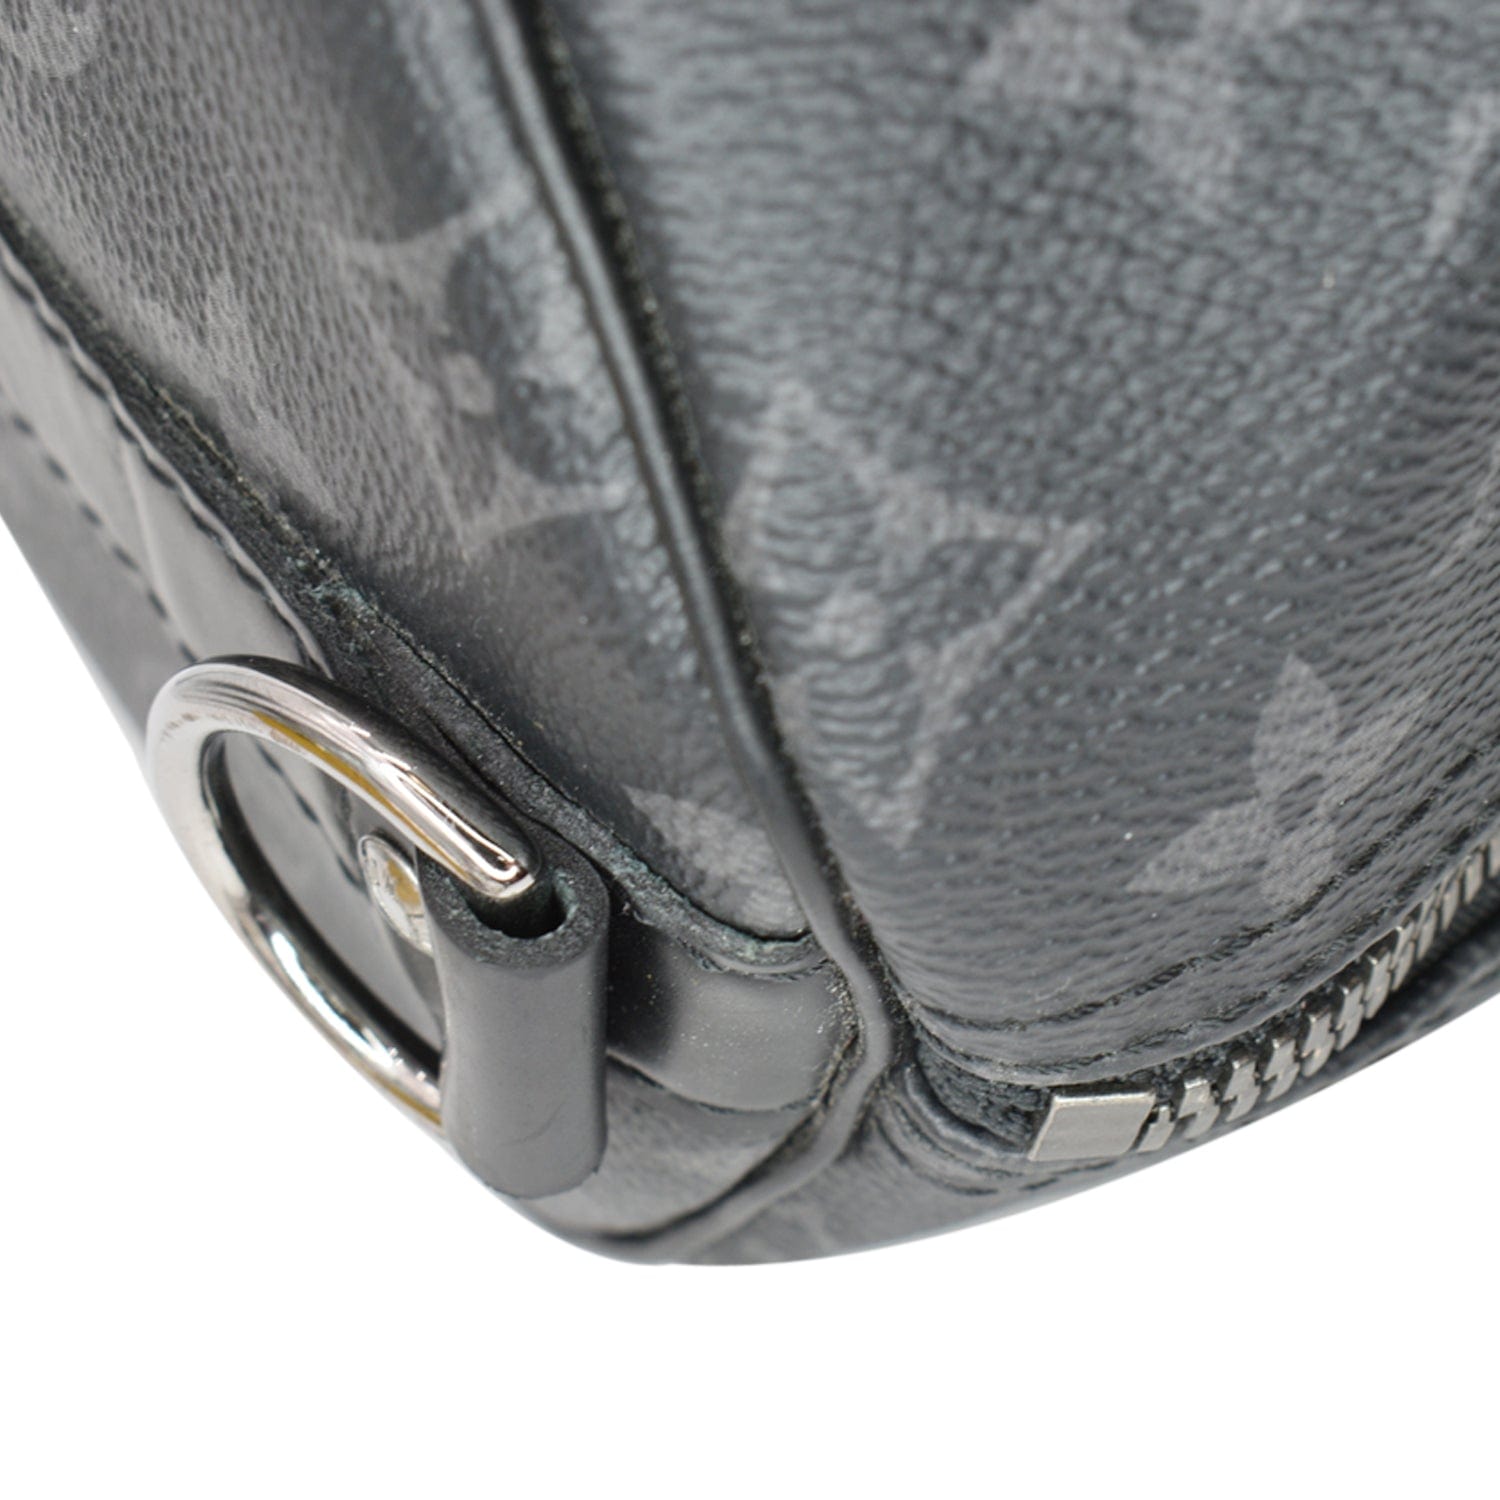 Authentic Louis Vuitton Monogram Eclipse Mini Keepall Bandouliere